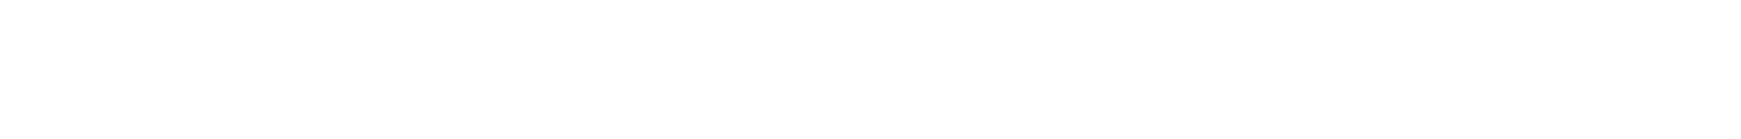 Logo Tile 1.png